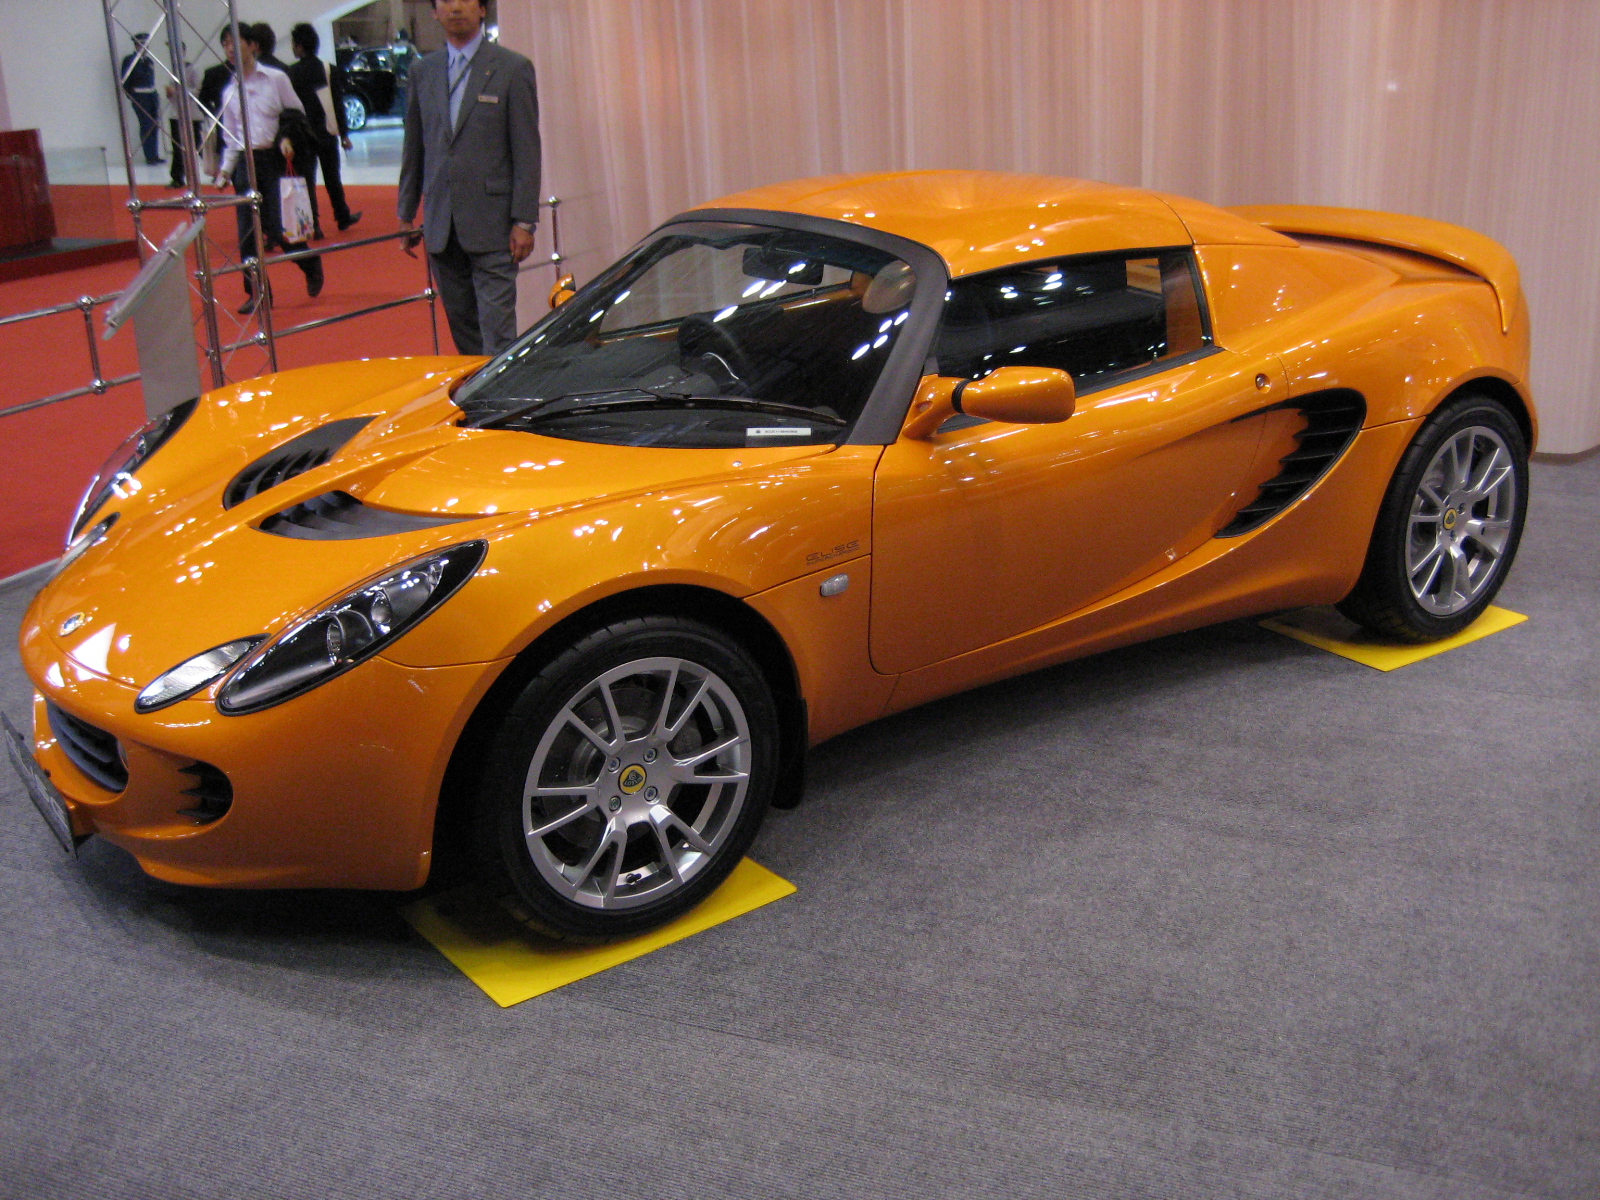 Dossier: 2007 Lotus Elise SC.JPG - Wikimedia Commons